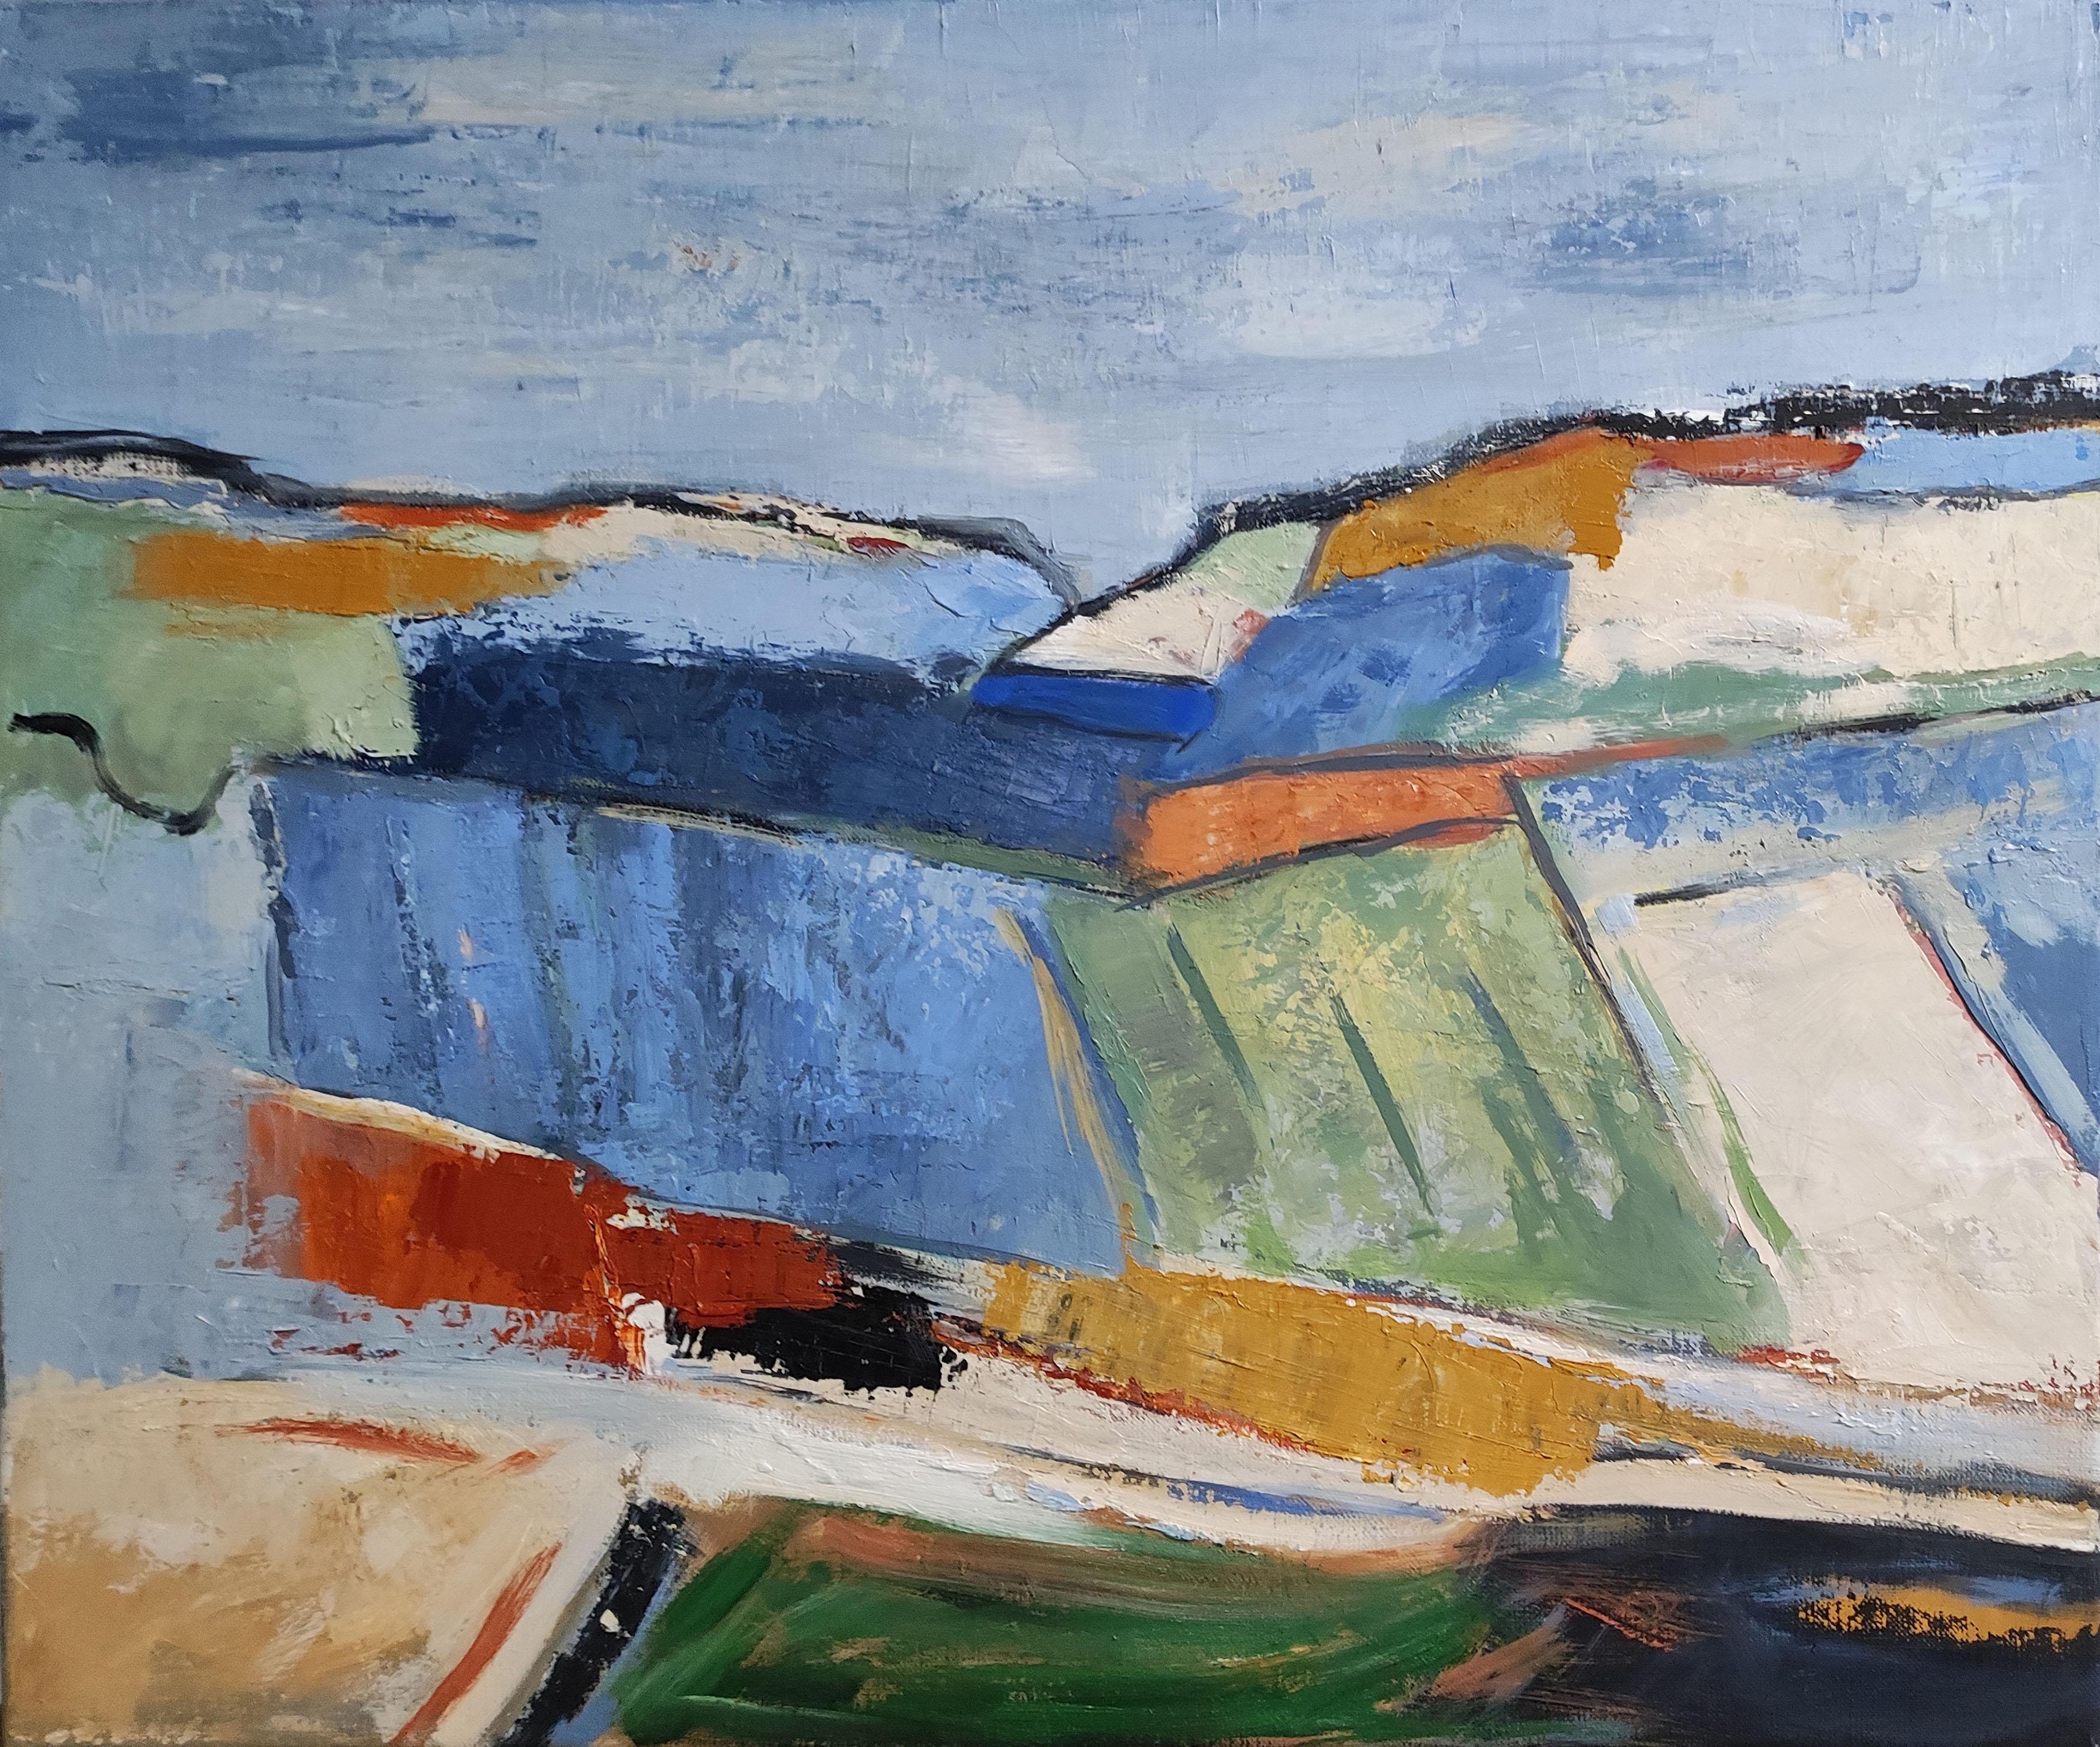 Geometrische Landschaft, unaufdringlich, farbig, Öl auf Leinwand  Textur, Expressionismus – Painting von SOPHIE DUMONT